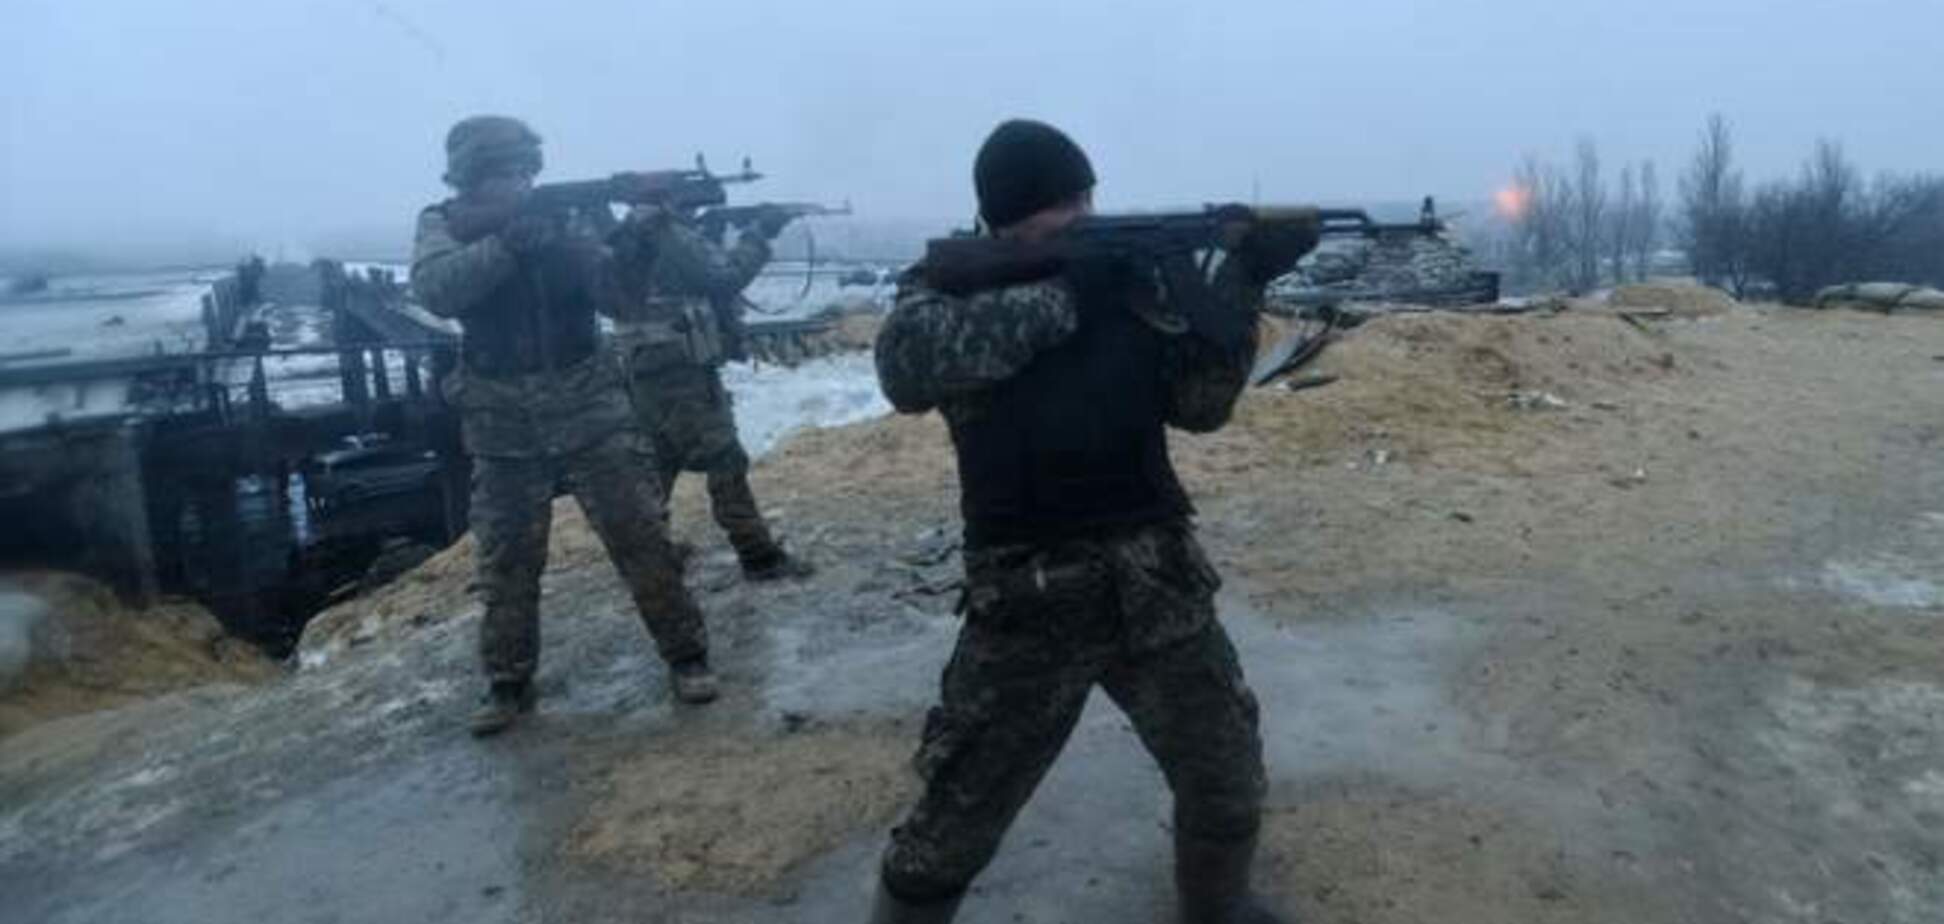 В районе Дебальцево ситуация резко осложнилась: российские войска оттеснили силы АТО - Тымчук